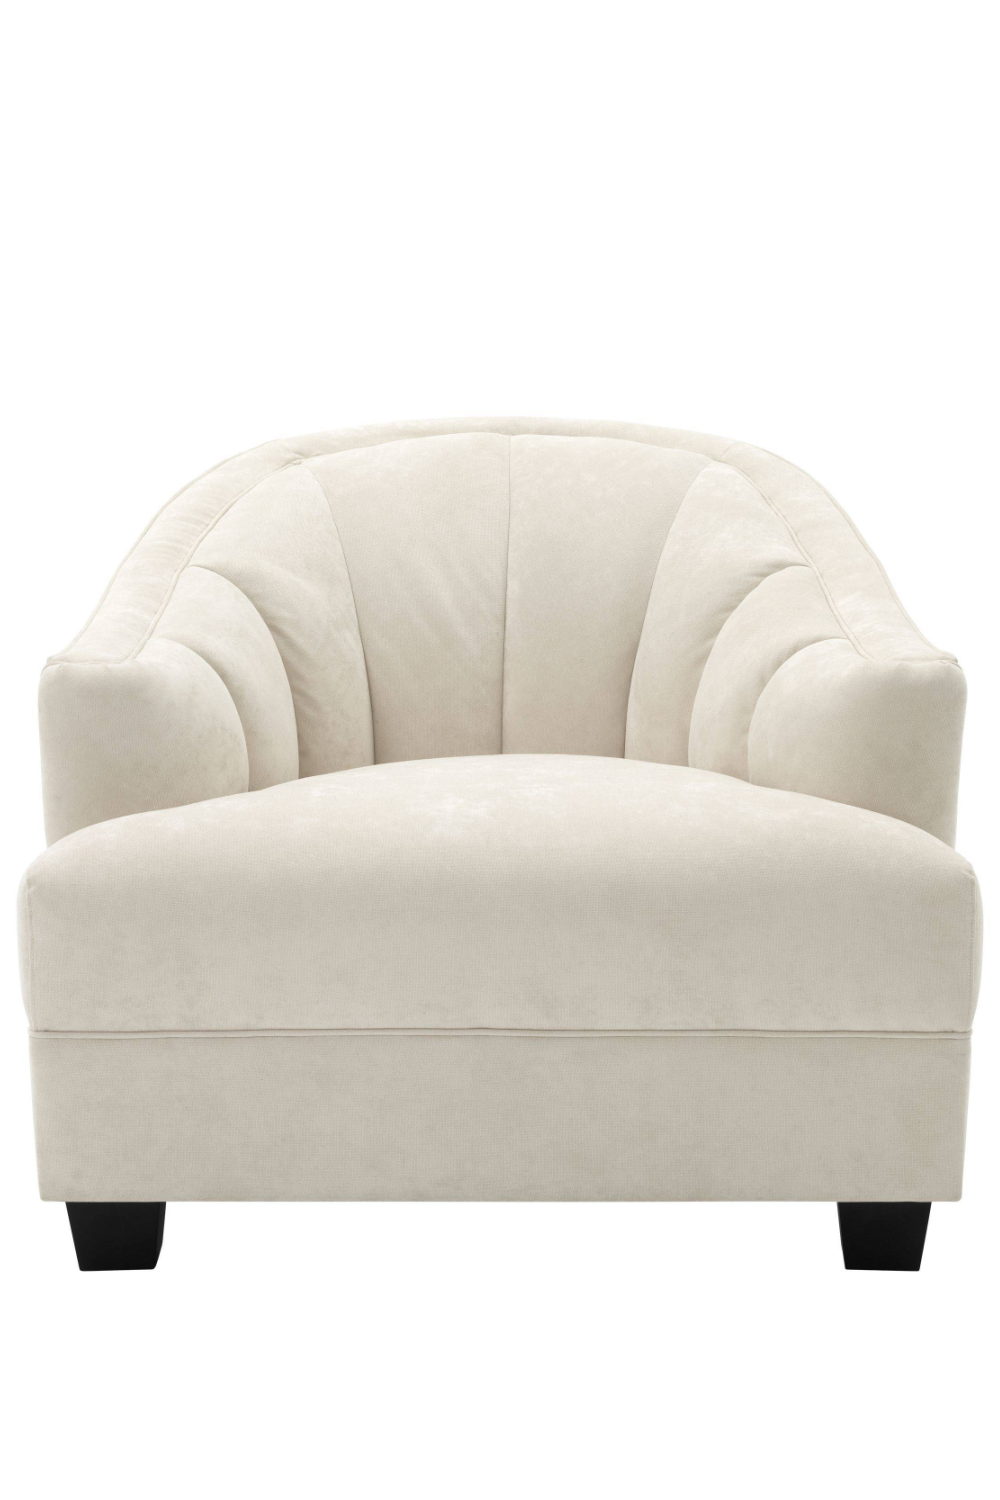 Cream Curved Back Accent Chair | Eichholtz Polaris | Oroa.com